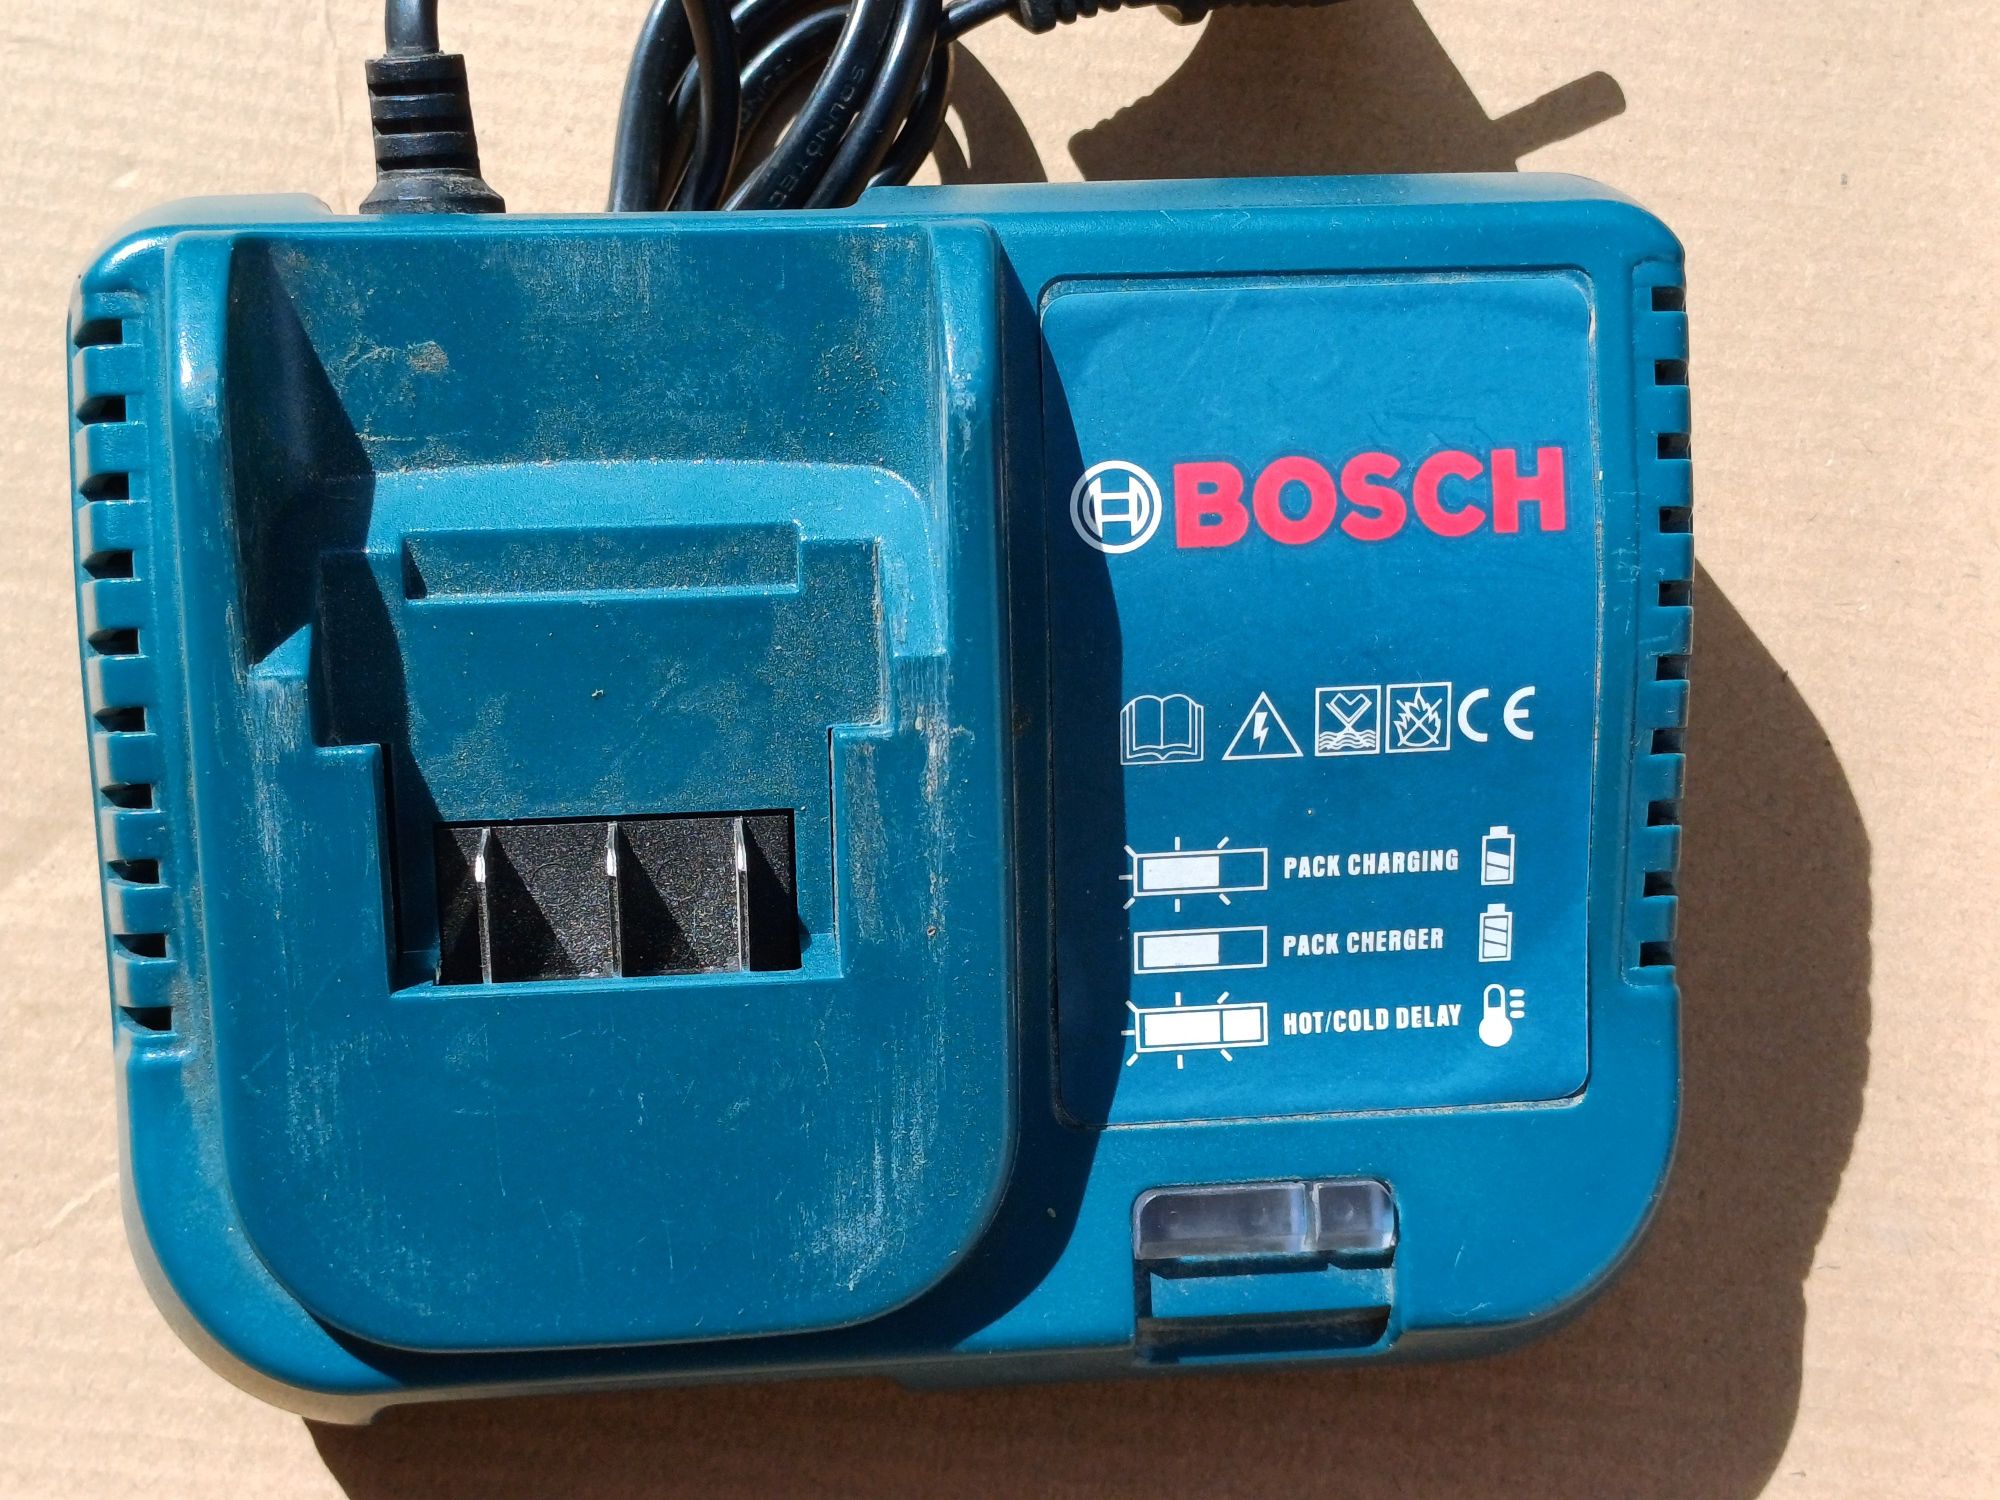 Incarcator Bosch 24v in stare buna
Este testat